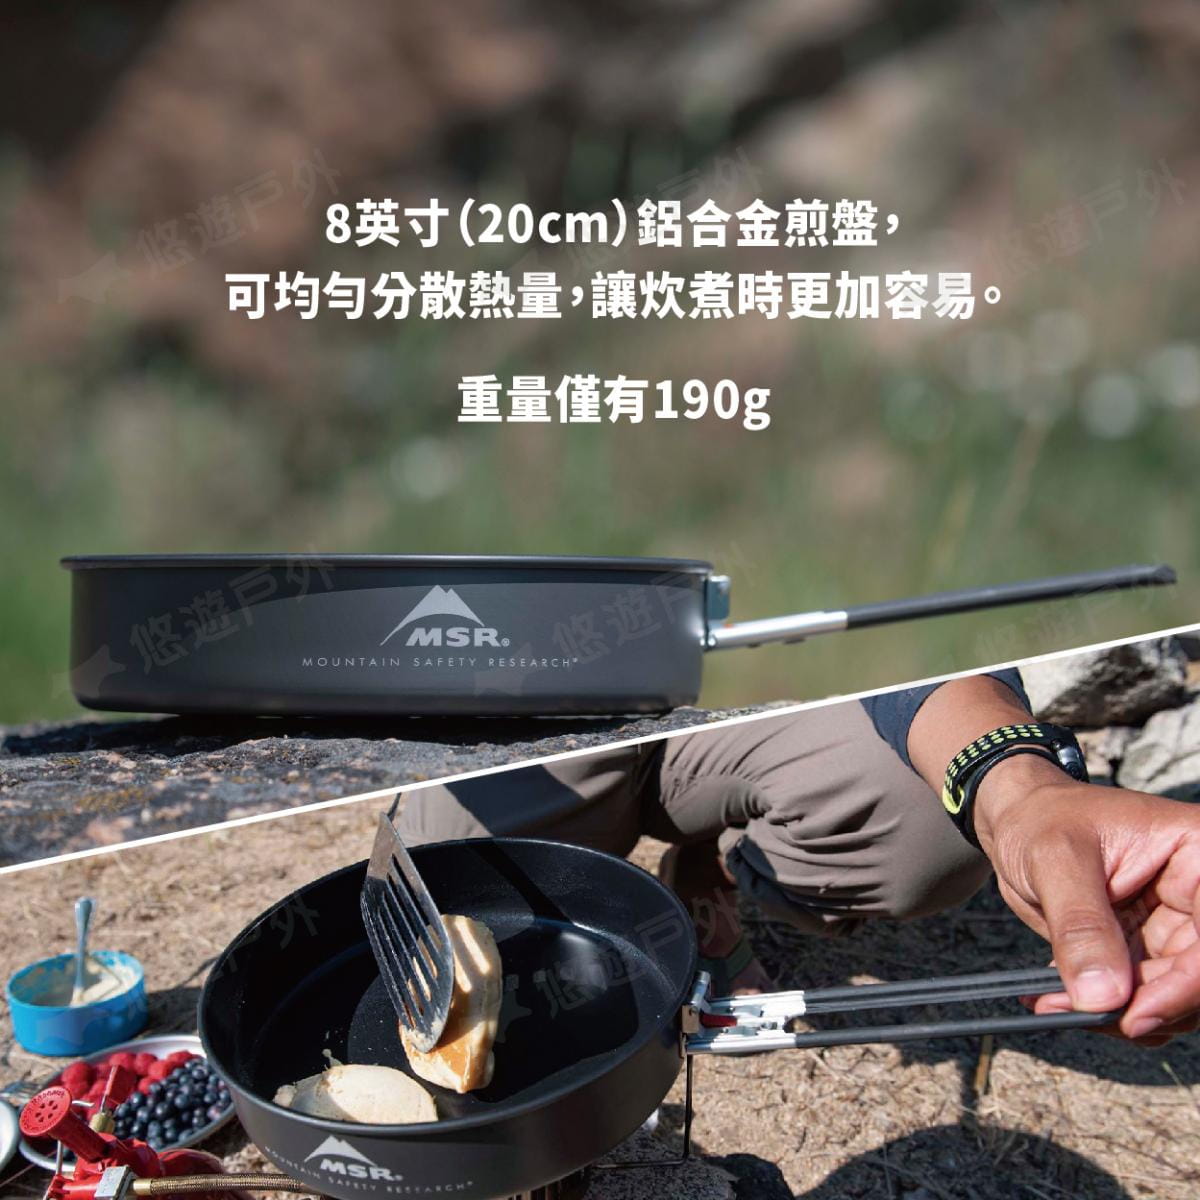 【MSR】美國 13233 Ceramic Flex 陶瓷硬鋁不沾煎盤 平底鍋 23cm 登山露營 2